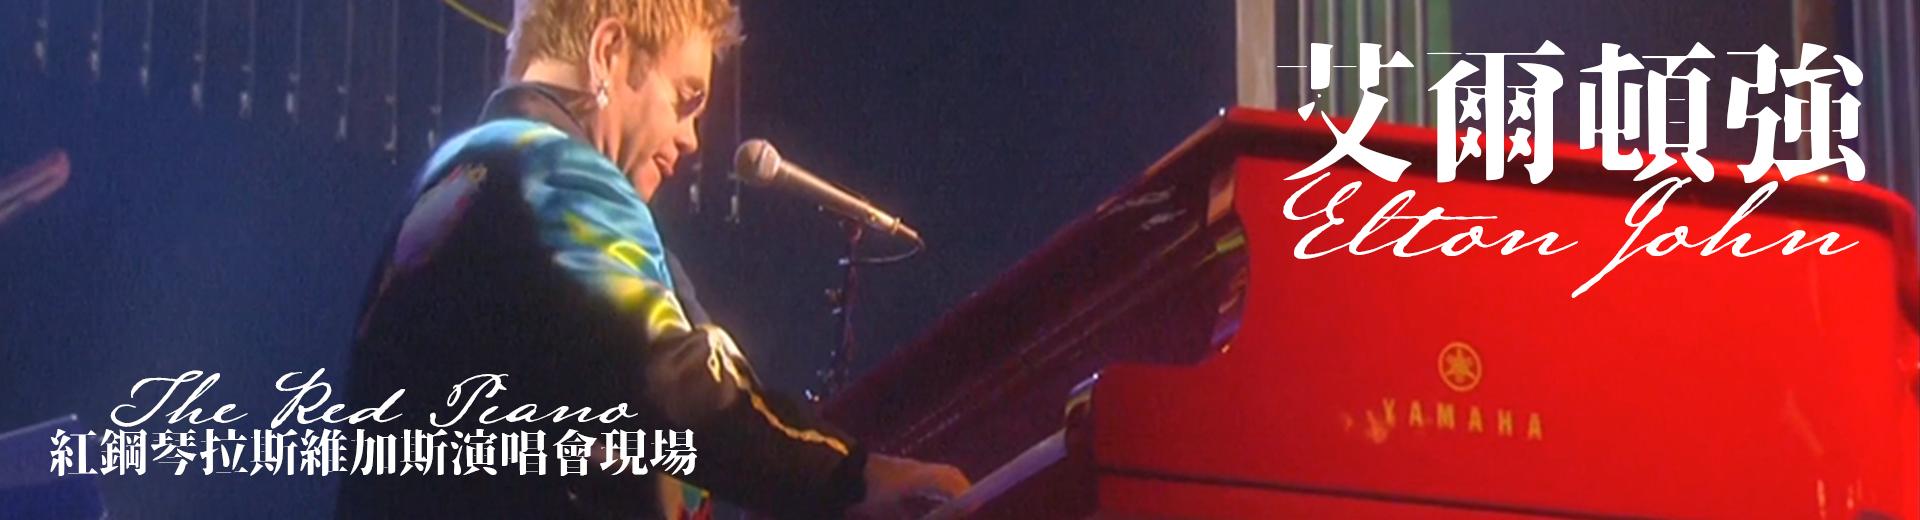 艾爾頓強 - 紅鋼琴拉斯維加斯演唱會現場 Elton John - The Red Piano